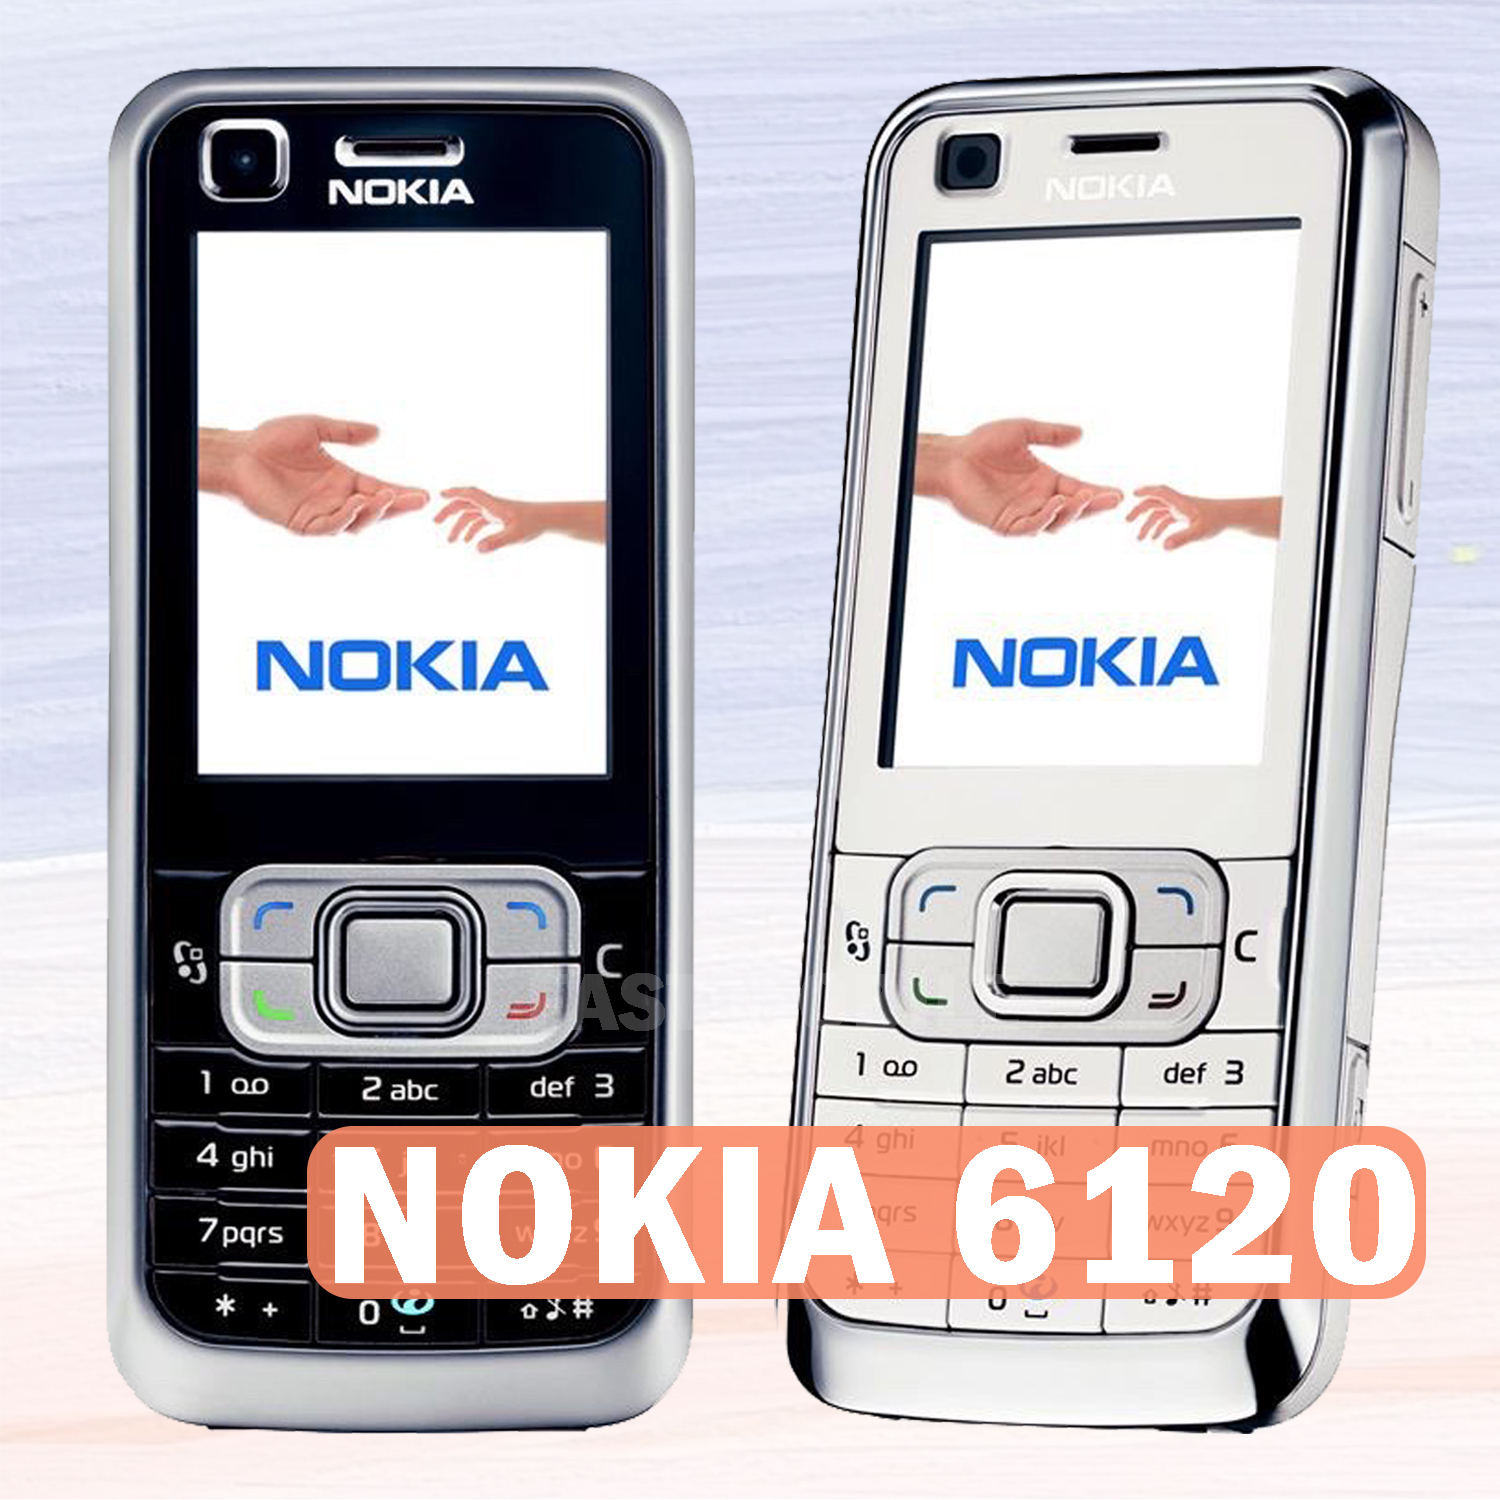 NOKIA 6120 -ขาว ปุ่มขนาดใหญ่ตัวอักษรเสียงใหญ่โทรศัพท์มือถือนักเรียนโทรศัพท์มือถือผู้สูงอายุ